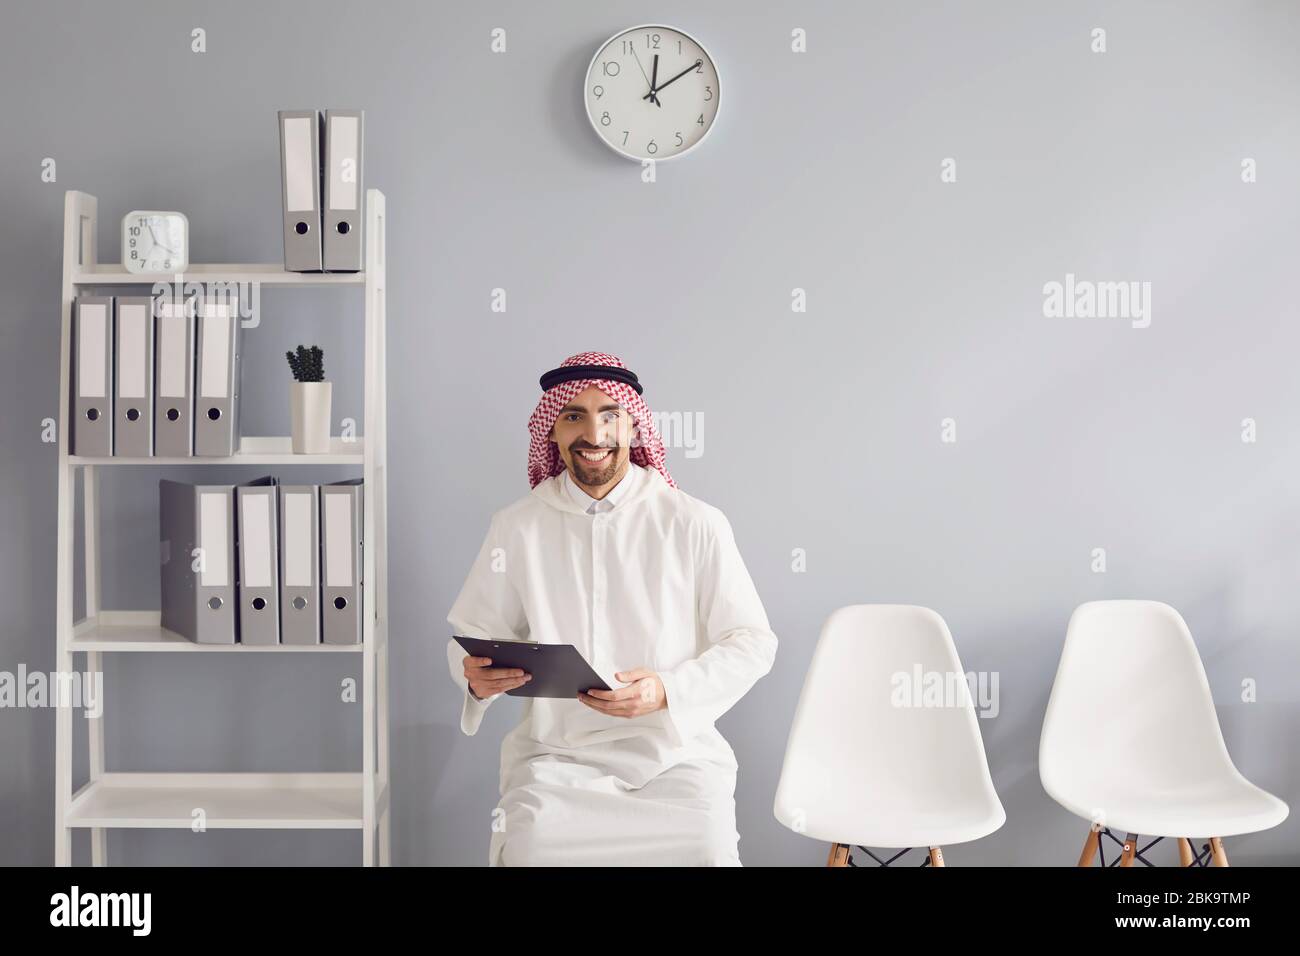 Un travailleur arabe attend un entretien avec un CV dans les mains assis sur une chaise dans le bureau. Banque D'Images